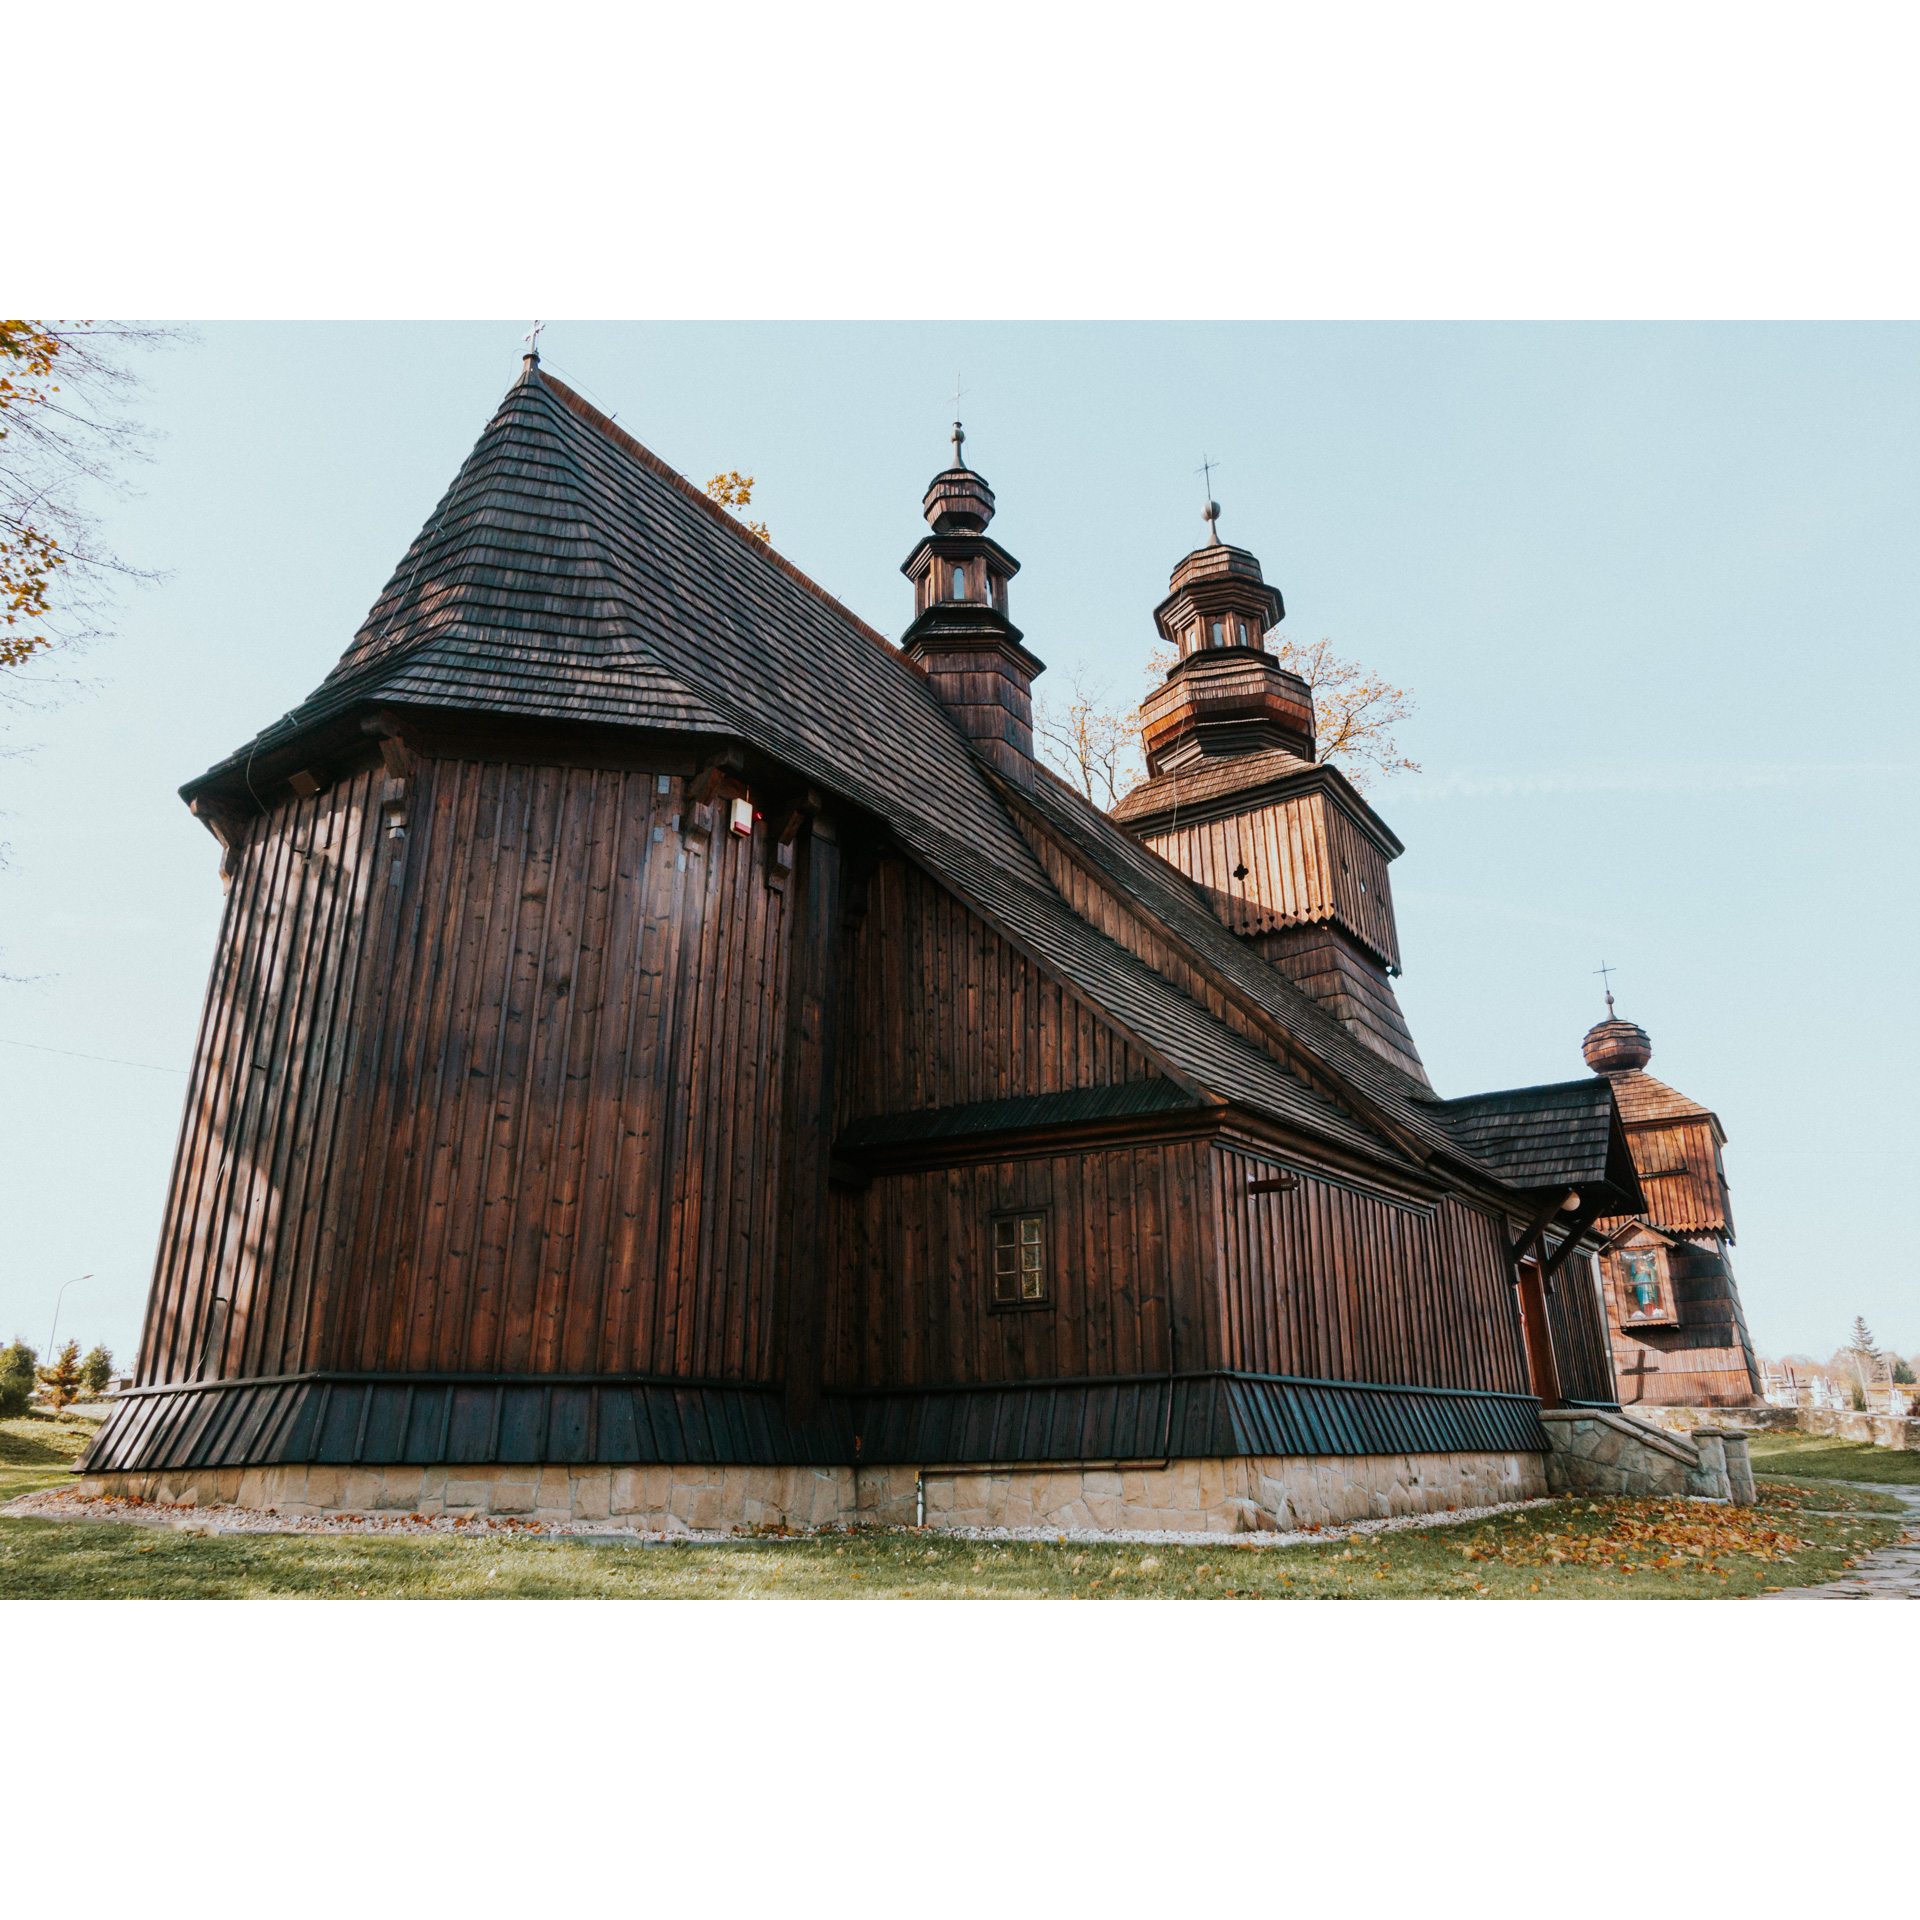 Bok drewnianego kościoła z podmurówką i kilkoma schodami na tle jasnego nieba